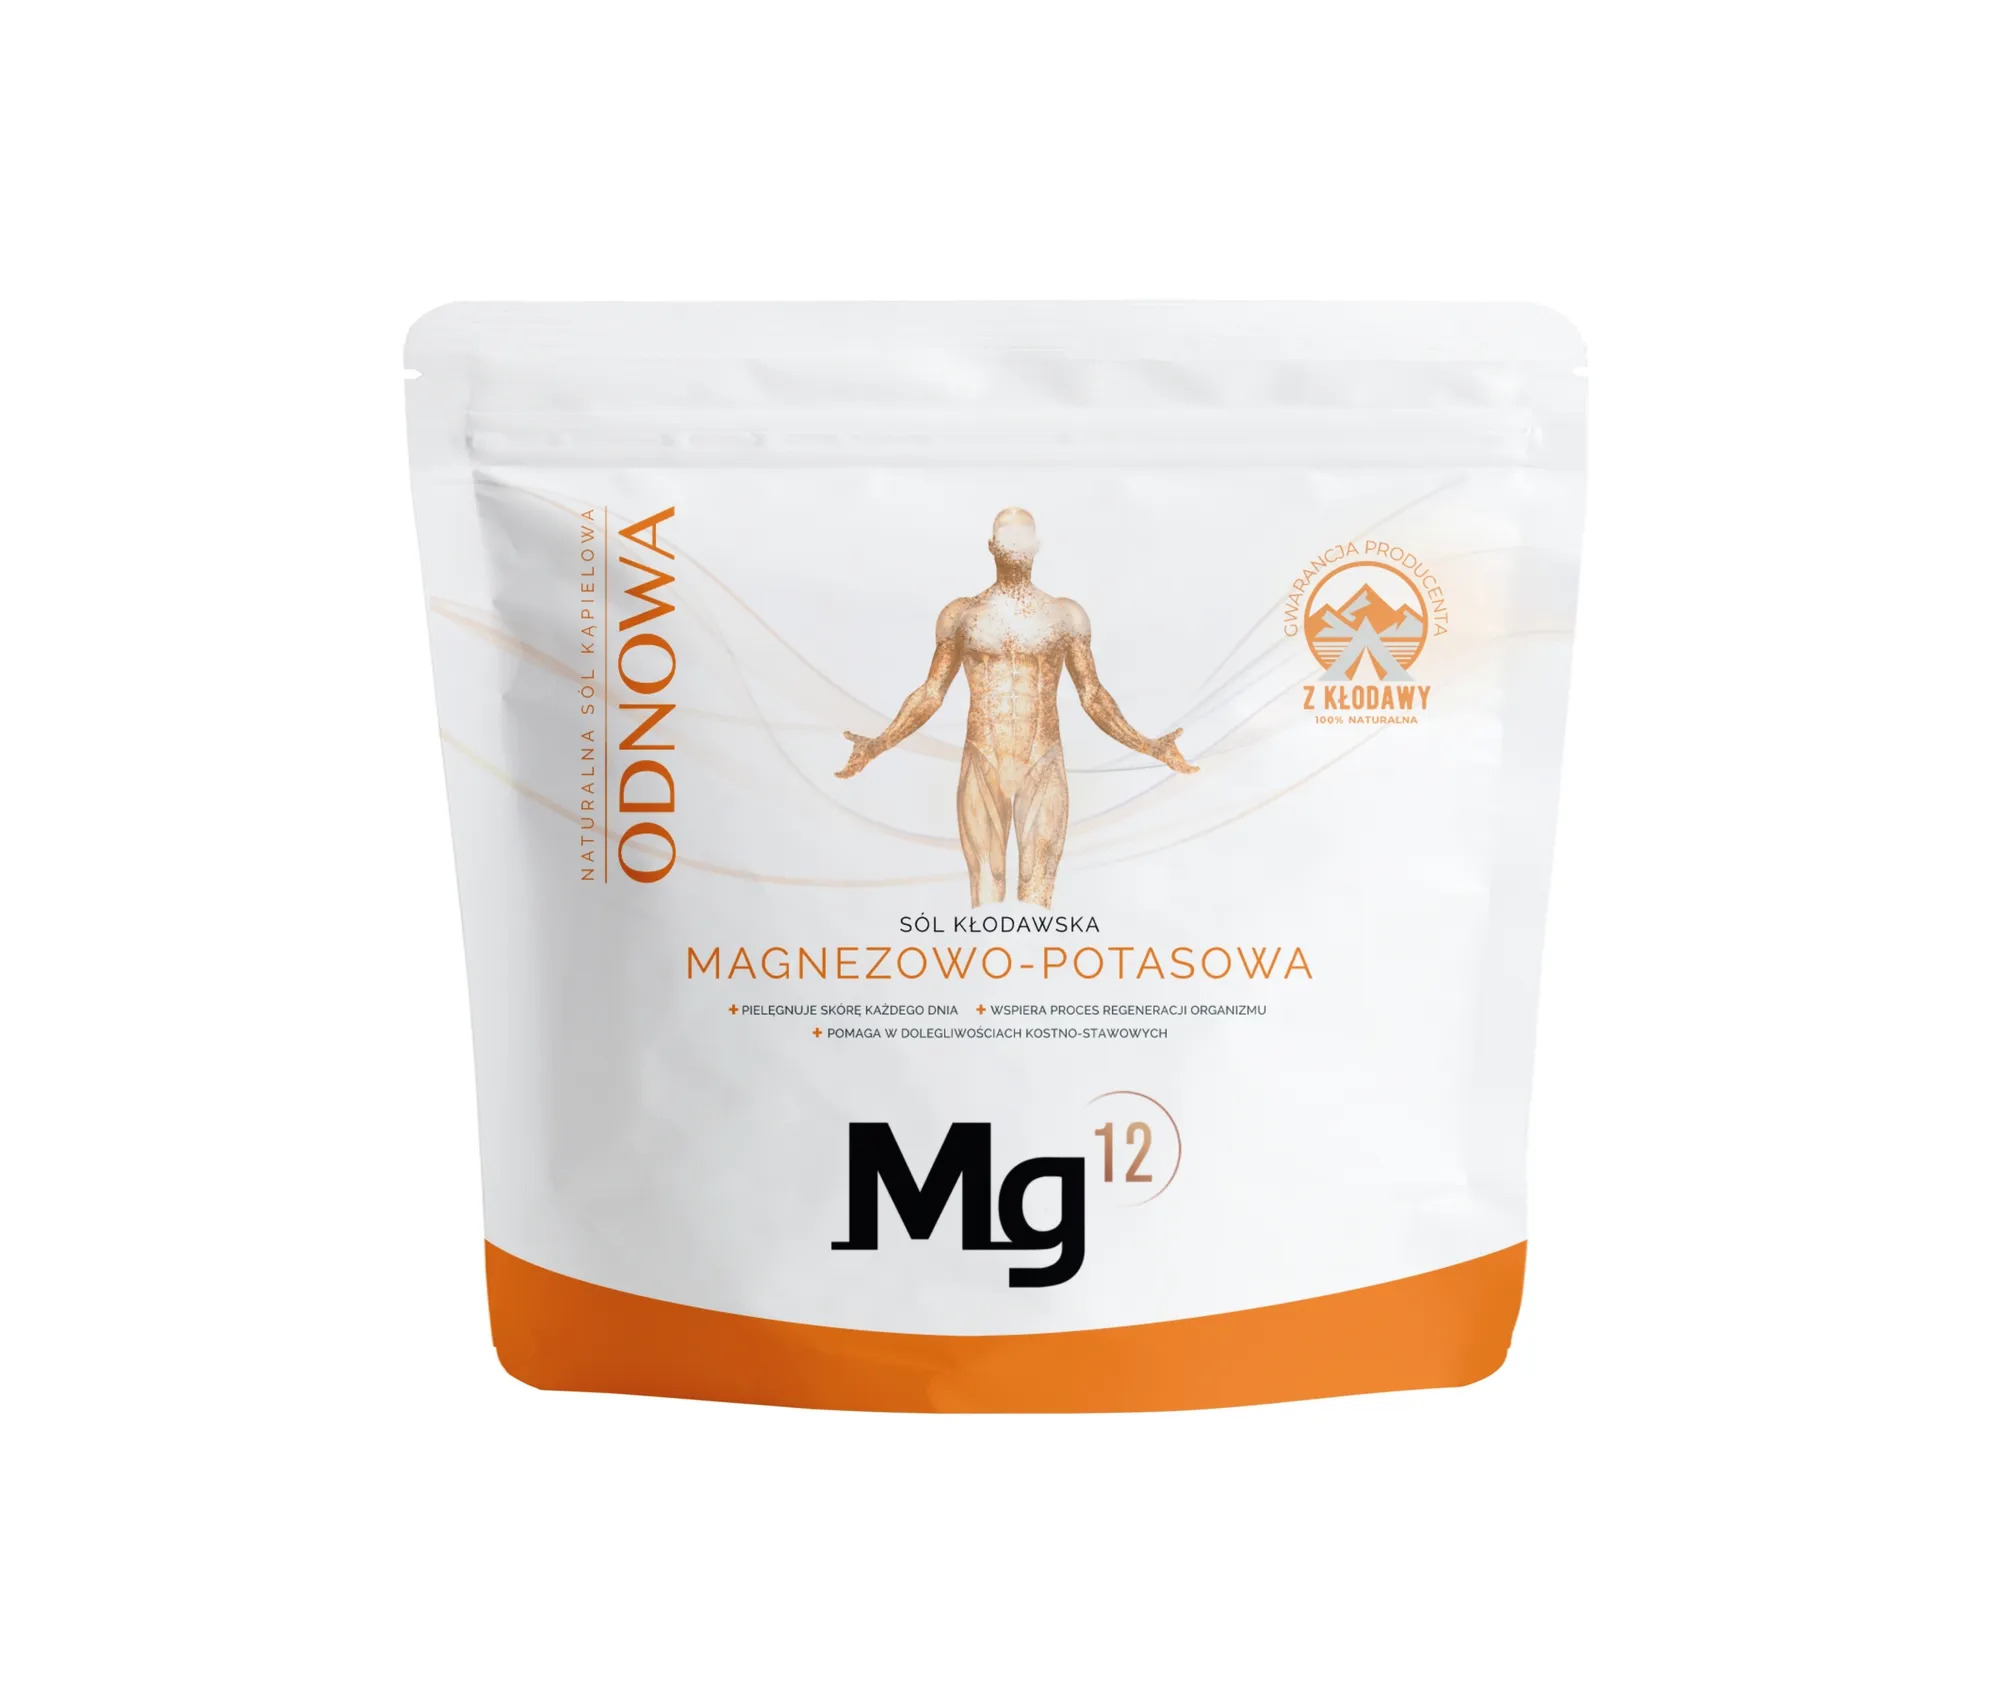 Mg12 Odnowa sól magnezowo-potasowa kłodawska, 1 kg